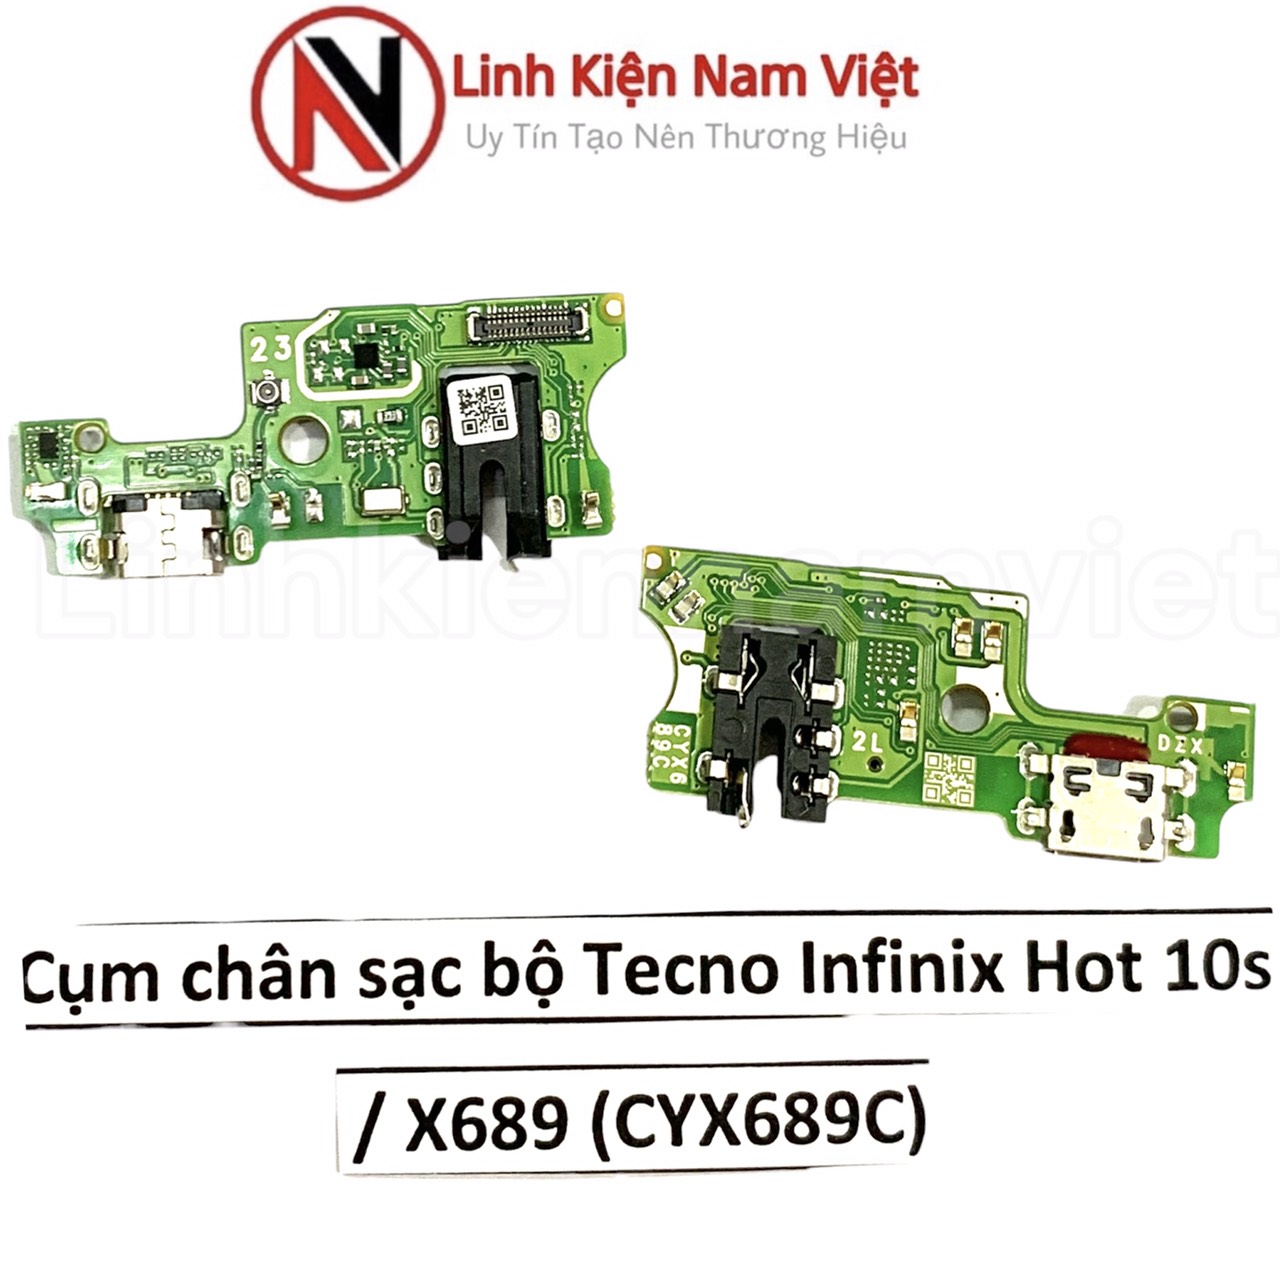 Cụm chân sạc bộ Tecno infinix Hot 10S / X689 (CYX689C)